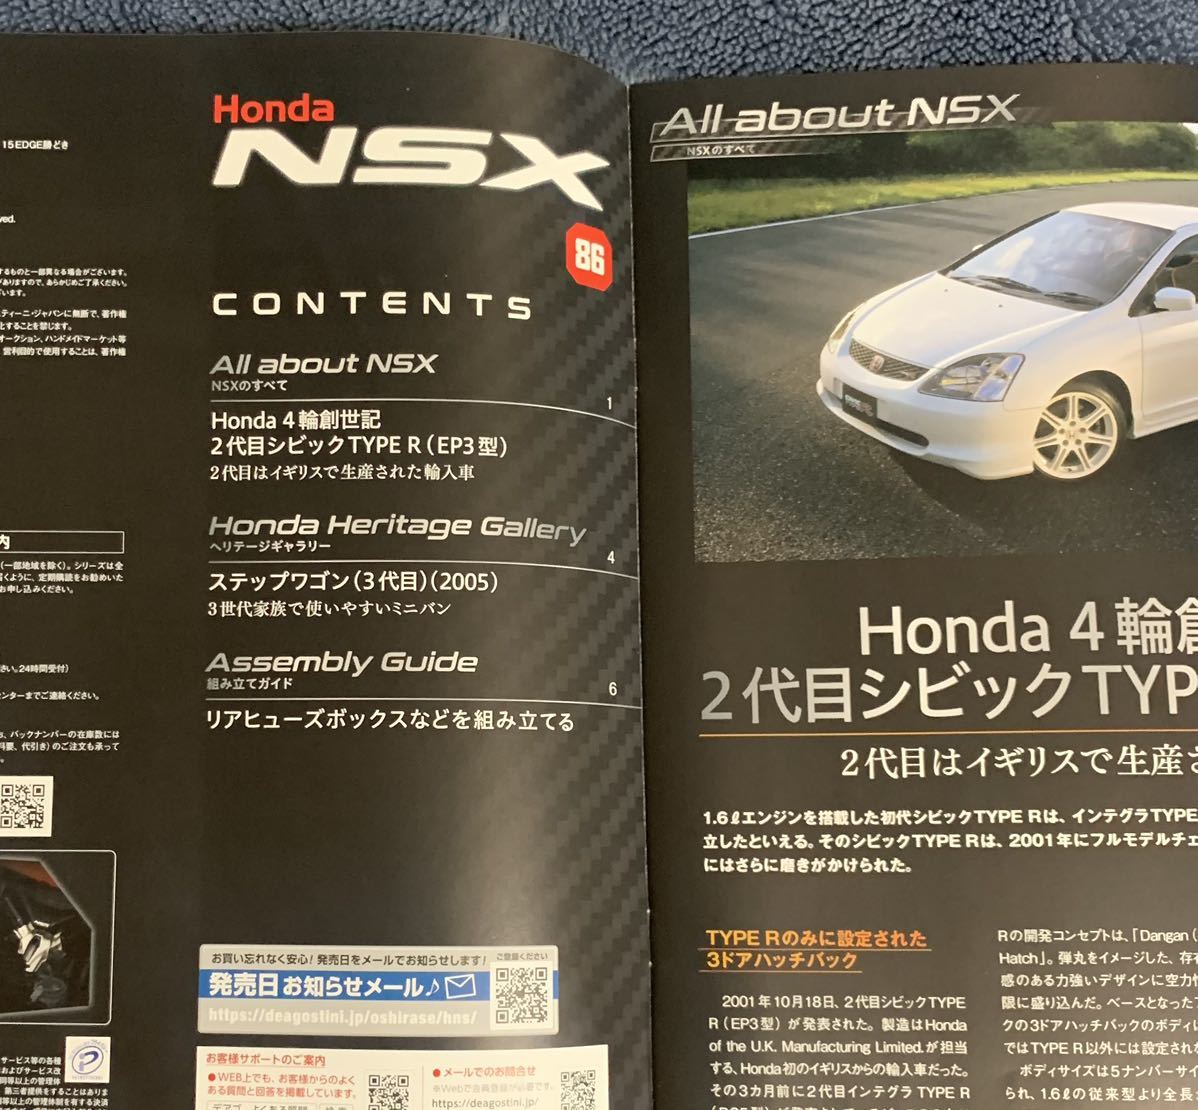  der Goss чай niDeAGOSTINI Honda Honda NSX 86 номер Step WGN 3 поколения (2005) брошюра только детали нет почти новый товар клик post 185 иен отправка 